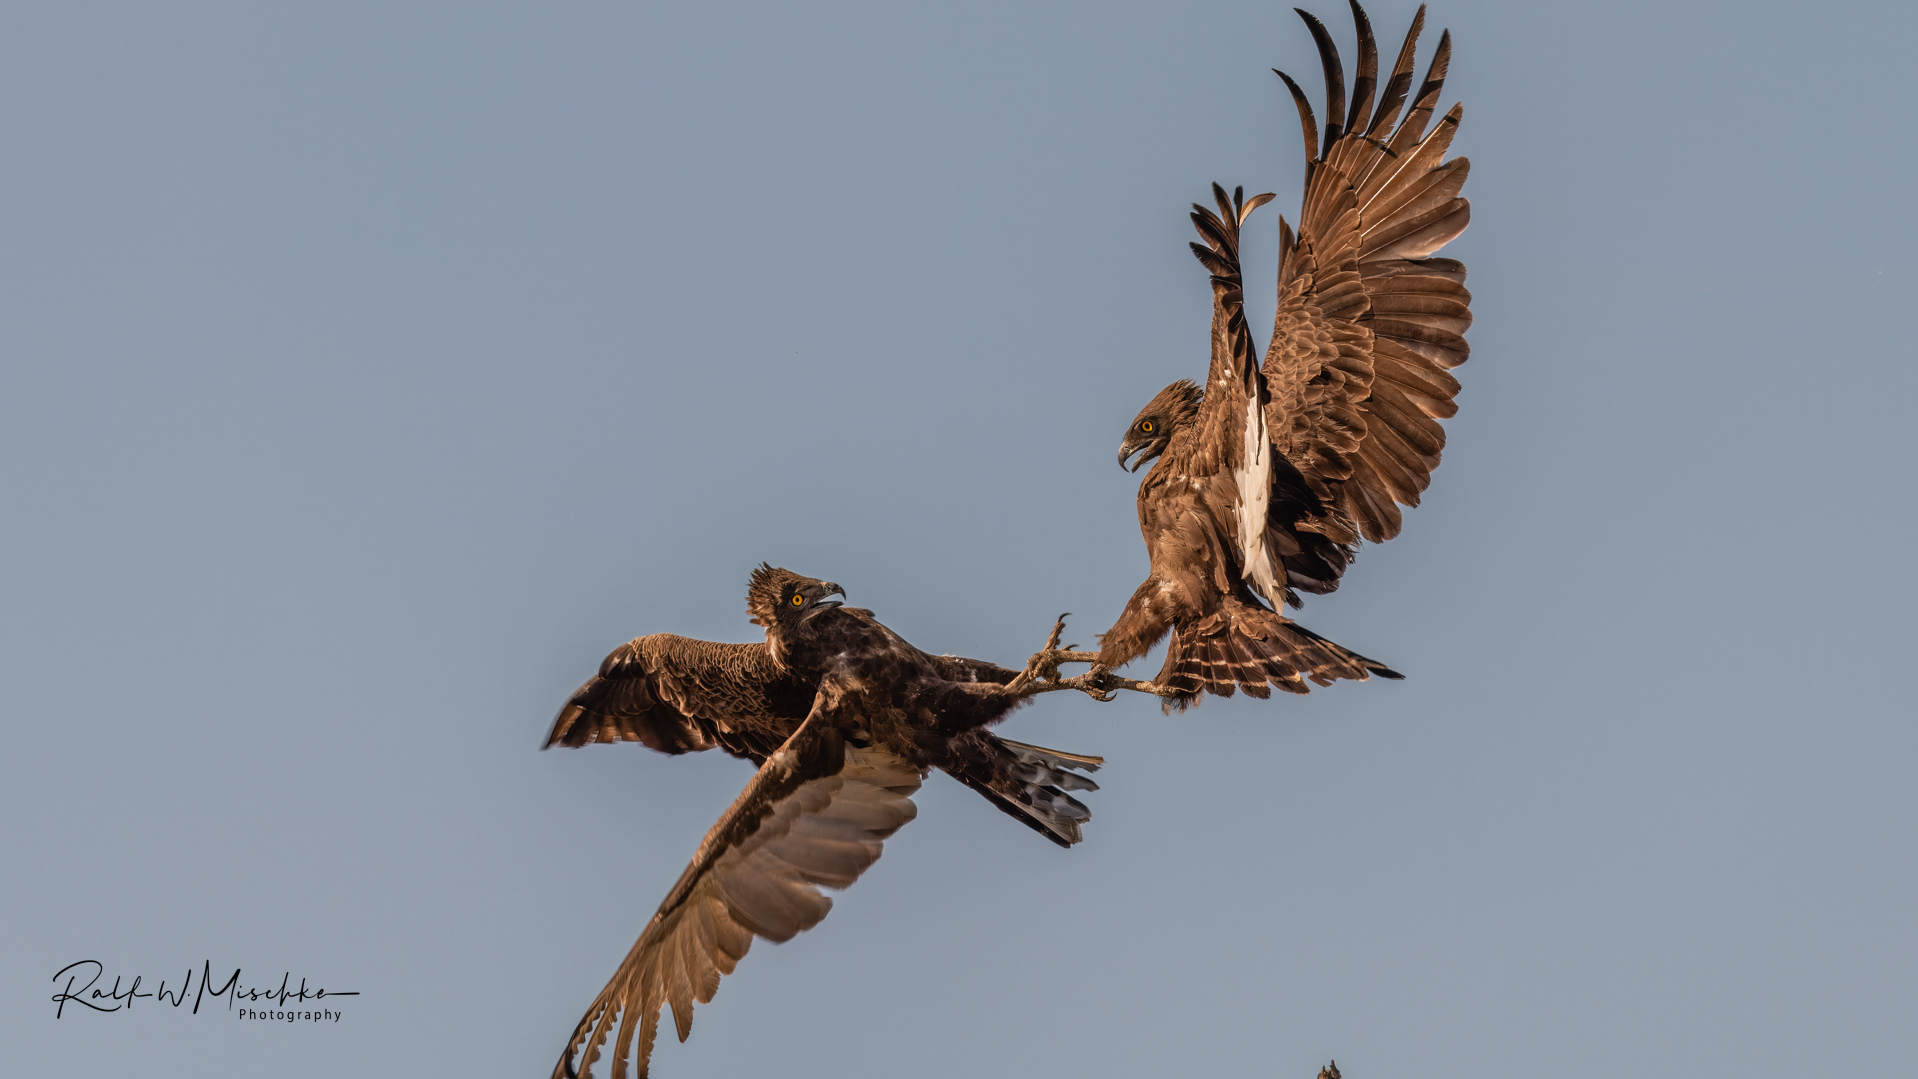 Luftkampf der Adler